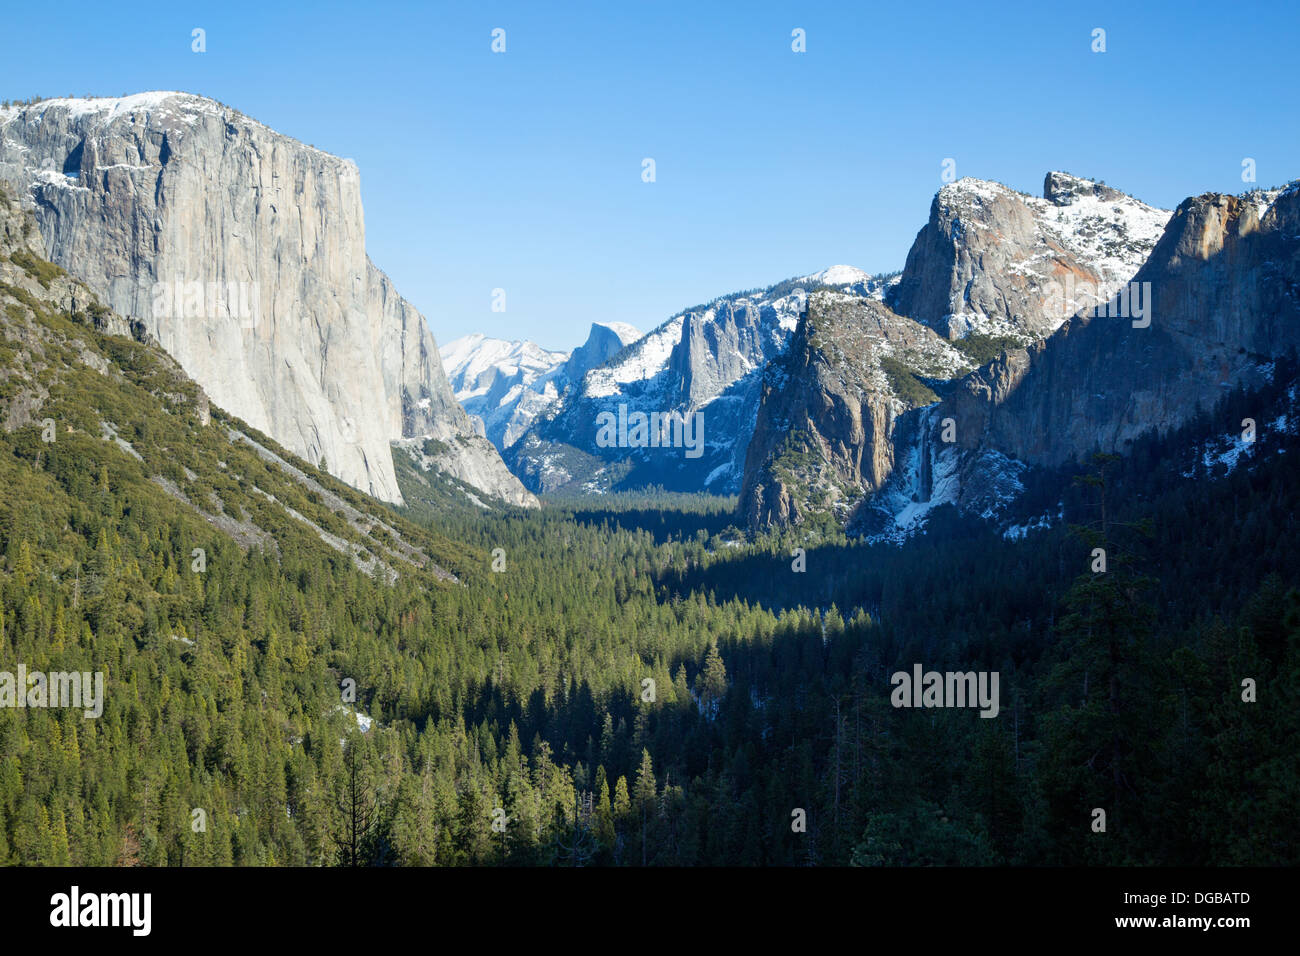 La vista de túnel con vistas al valle de Yosemite, California Foto de stock